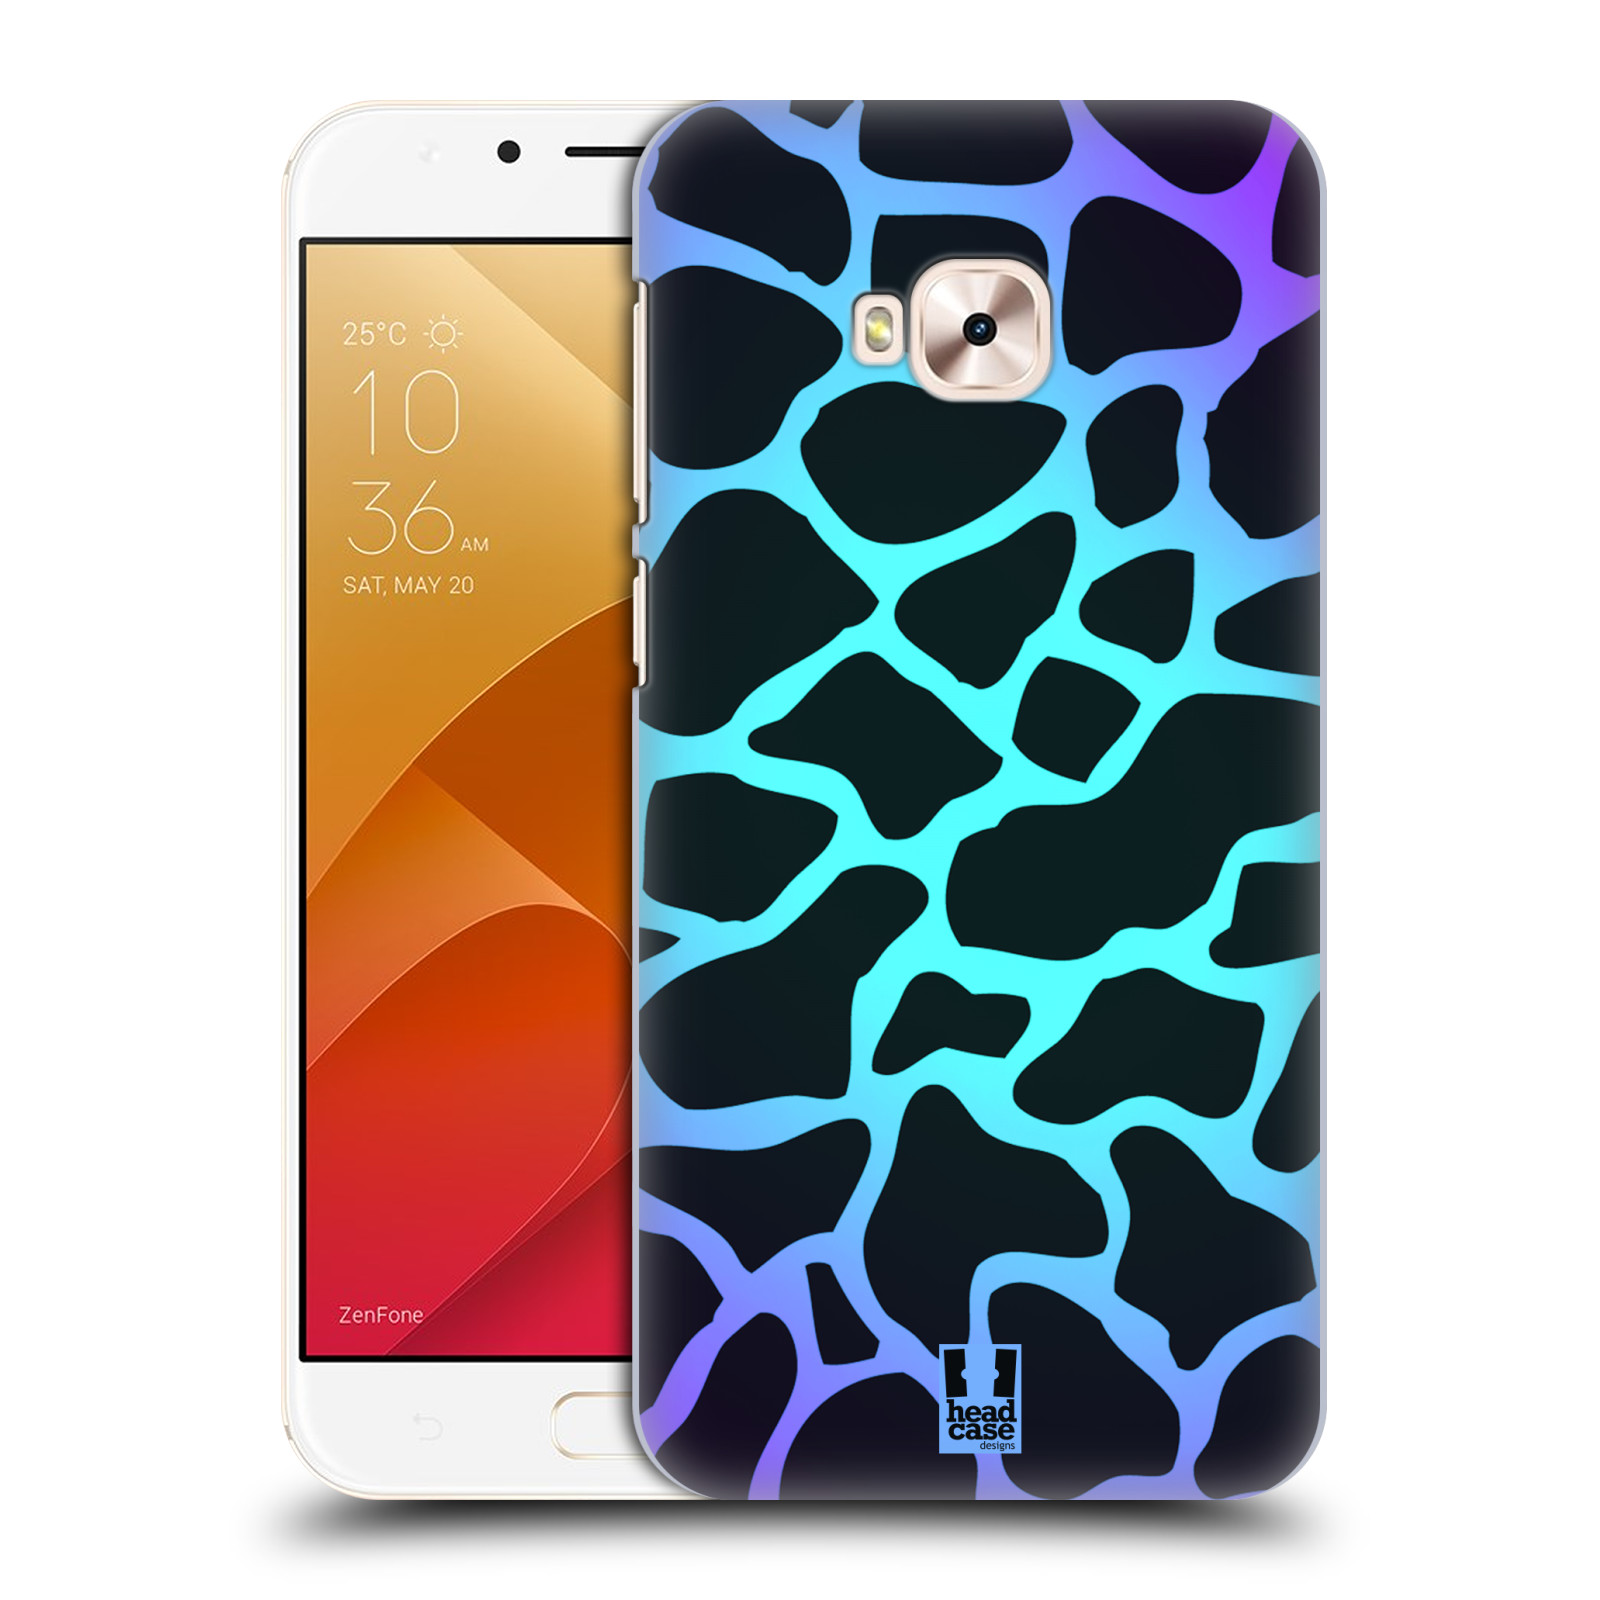 HEAD CASE plastový obal na mobil Asus Zenfone 4 Selfie Pro ZD552KL vzor Divočina zvíře tyrkysová žirafa magický vzor